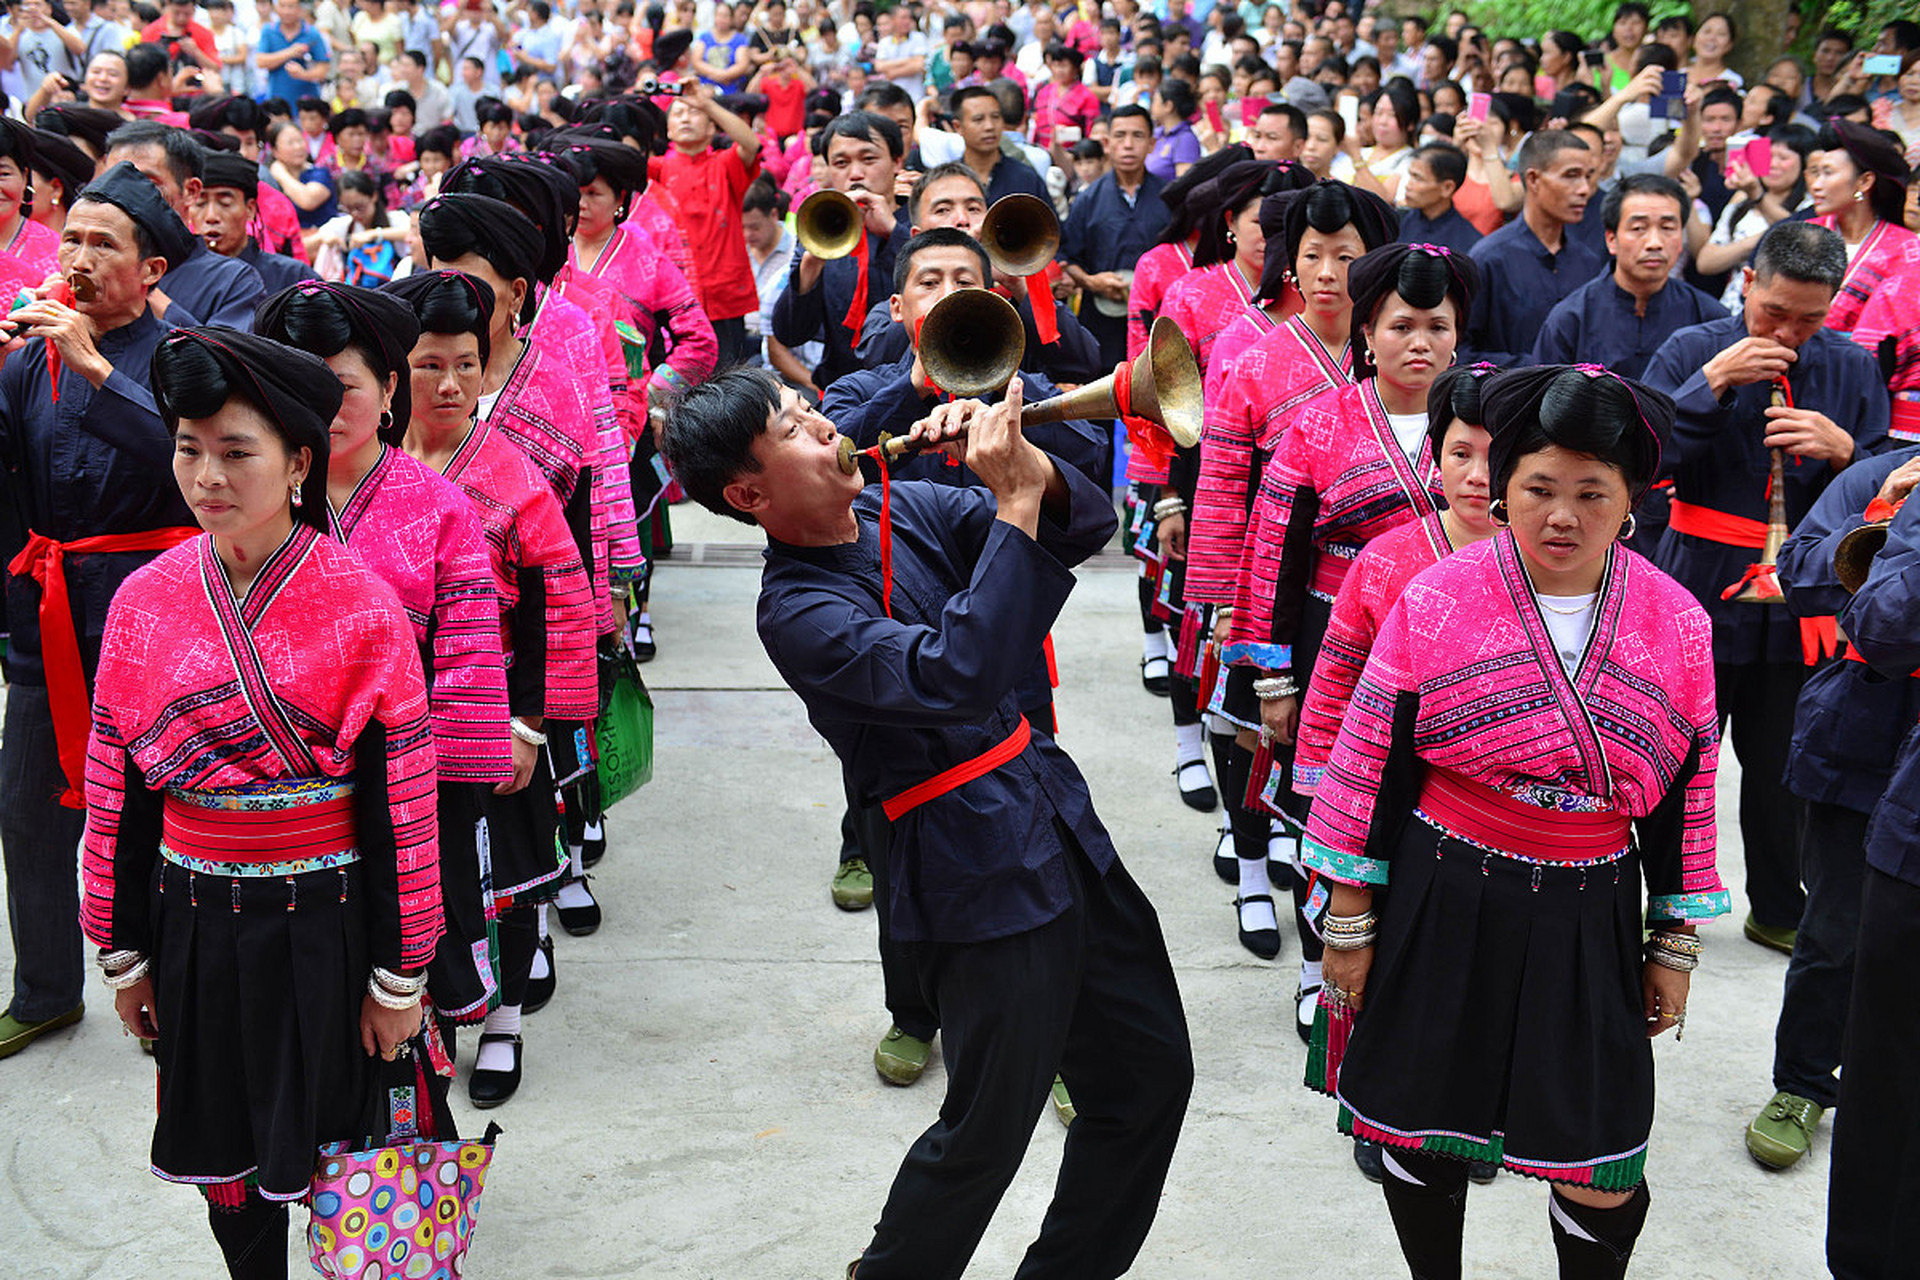 壮族歌圩是广西南宁市的传统民俗活动,也是国家级非物质文化遗产